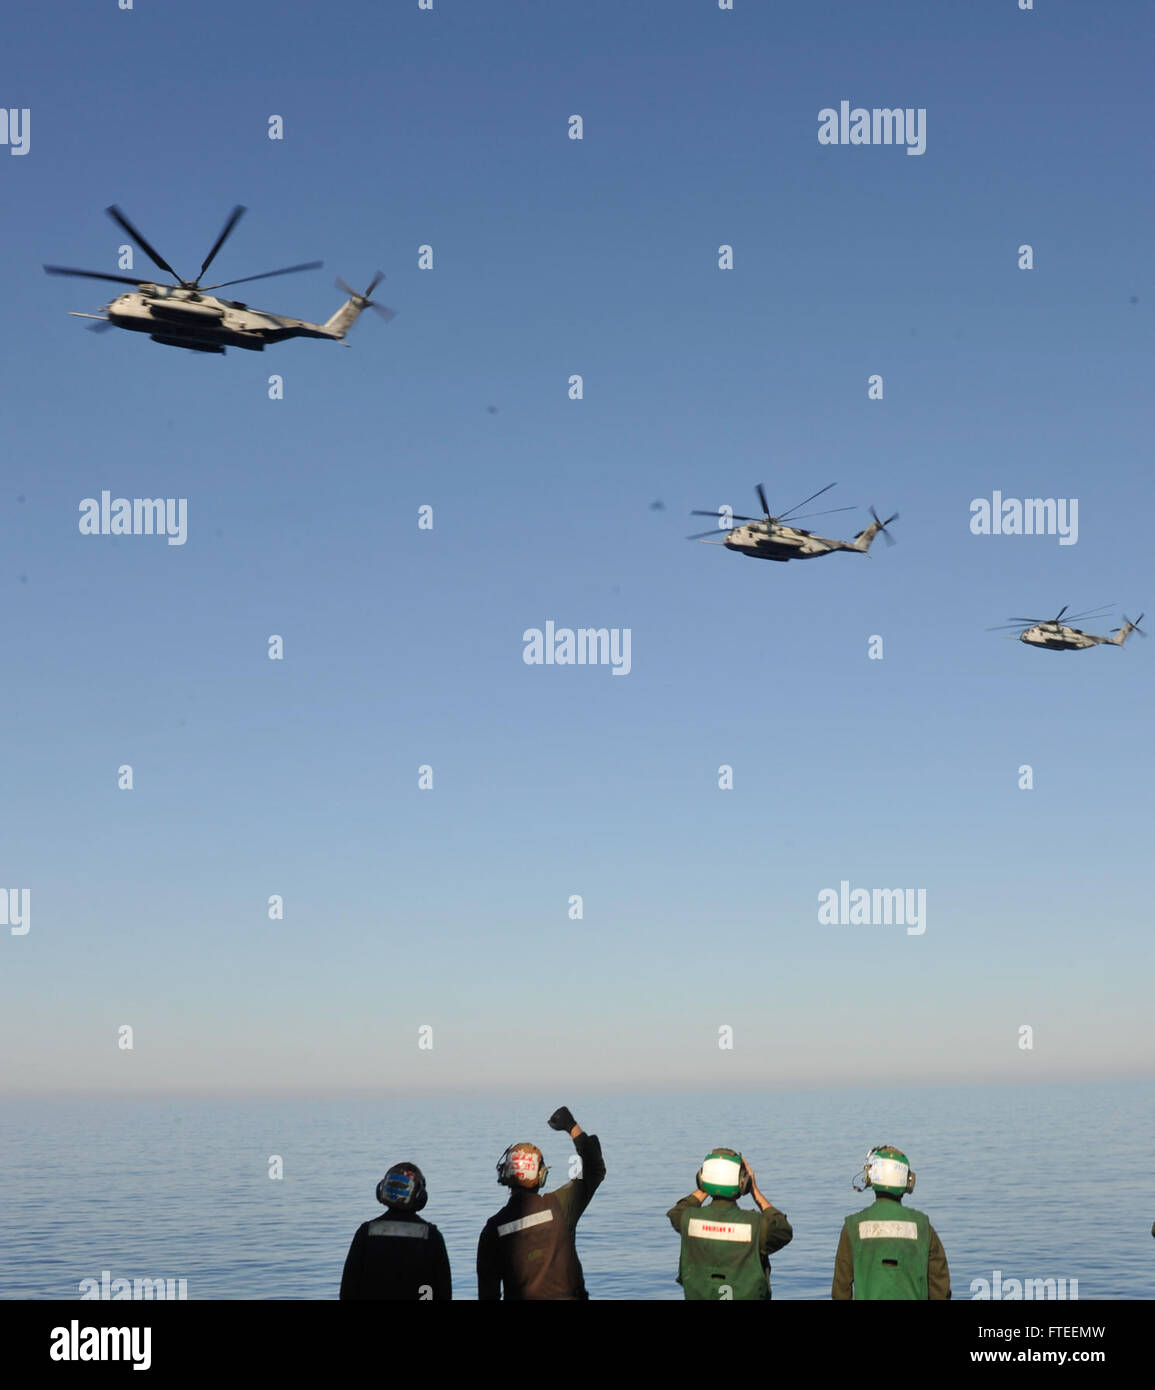 140605-N-AO823-039-Mittelmeer (5. Juni 2014)--Segler beobachten drei CH-53 Super Hengste tragen Post Ansatz Mehrzweck amphibischer Angriff Schiff USS Bataan (LHD-5).  Bataan, mit Elementen aus der 22. Marine Expeditionary Unit ist in den USA operierende 6. Flotte von Operationen, die Reaktion auf die Krise der USA erweitern der Kräfte in der Region. (Foto: U.S. Navy Masse Kommunikation Spezialist Seemann Lehrling Michael J. Lieberknecht / veröffentlicht) www.facebook.com/ussbataan (http://www.facebook.com/ussbataan) Stockfoto